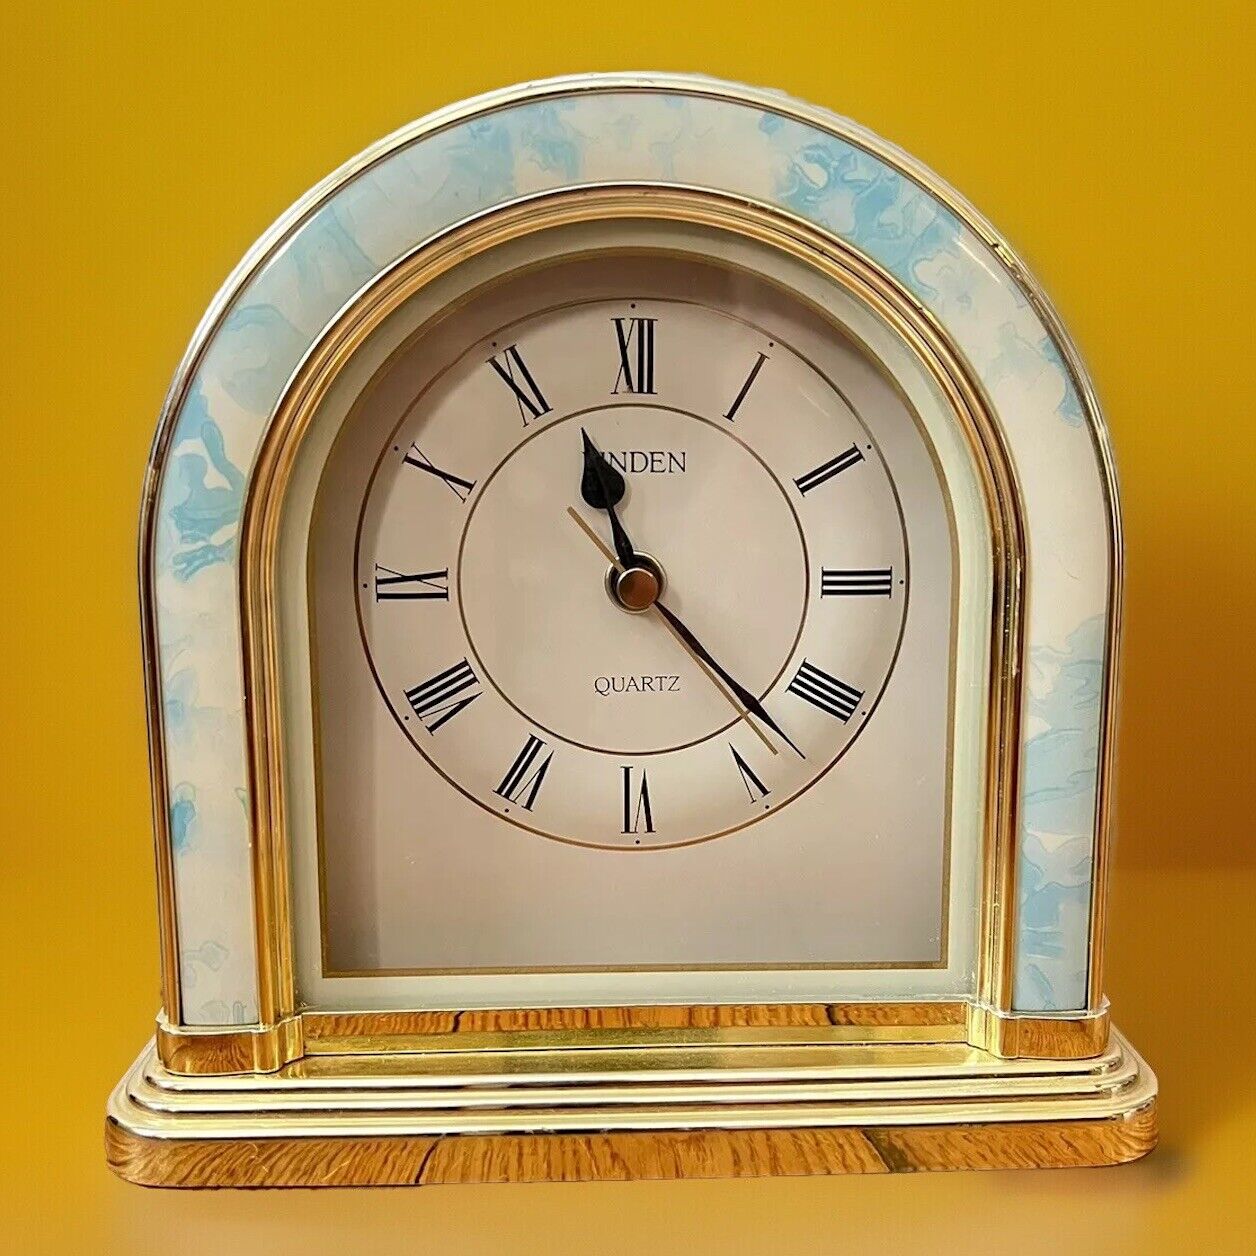 Vintage LINDEN Mantle Desk Clock Quartz Blue & White Marble Style Gold Tone 7”